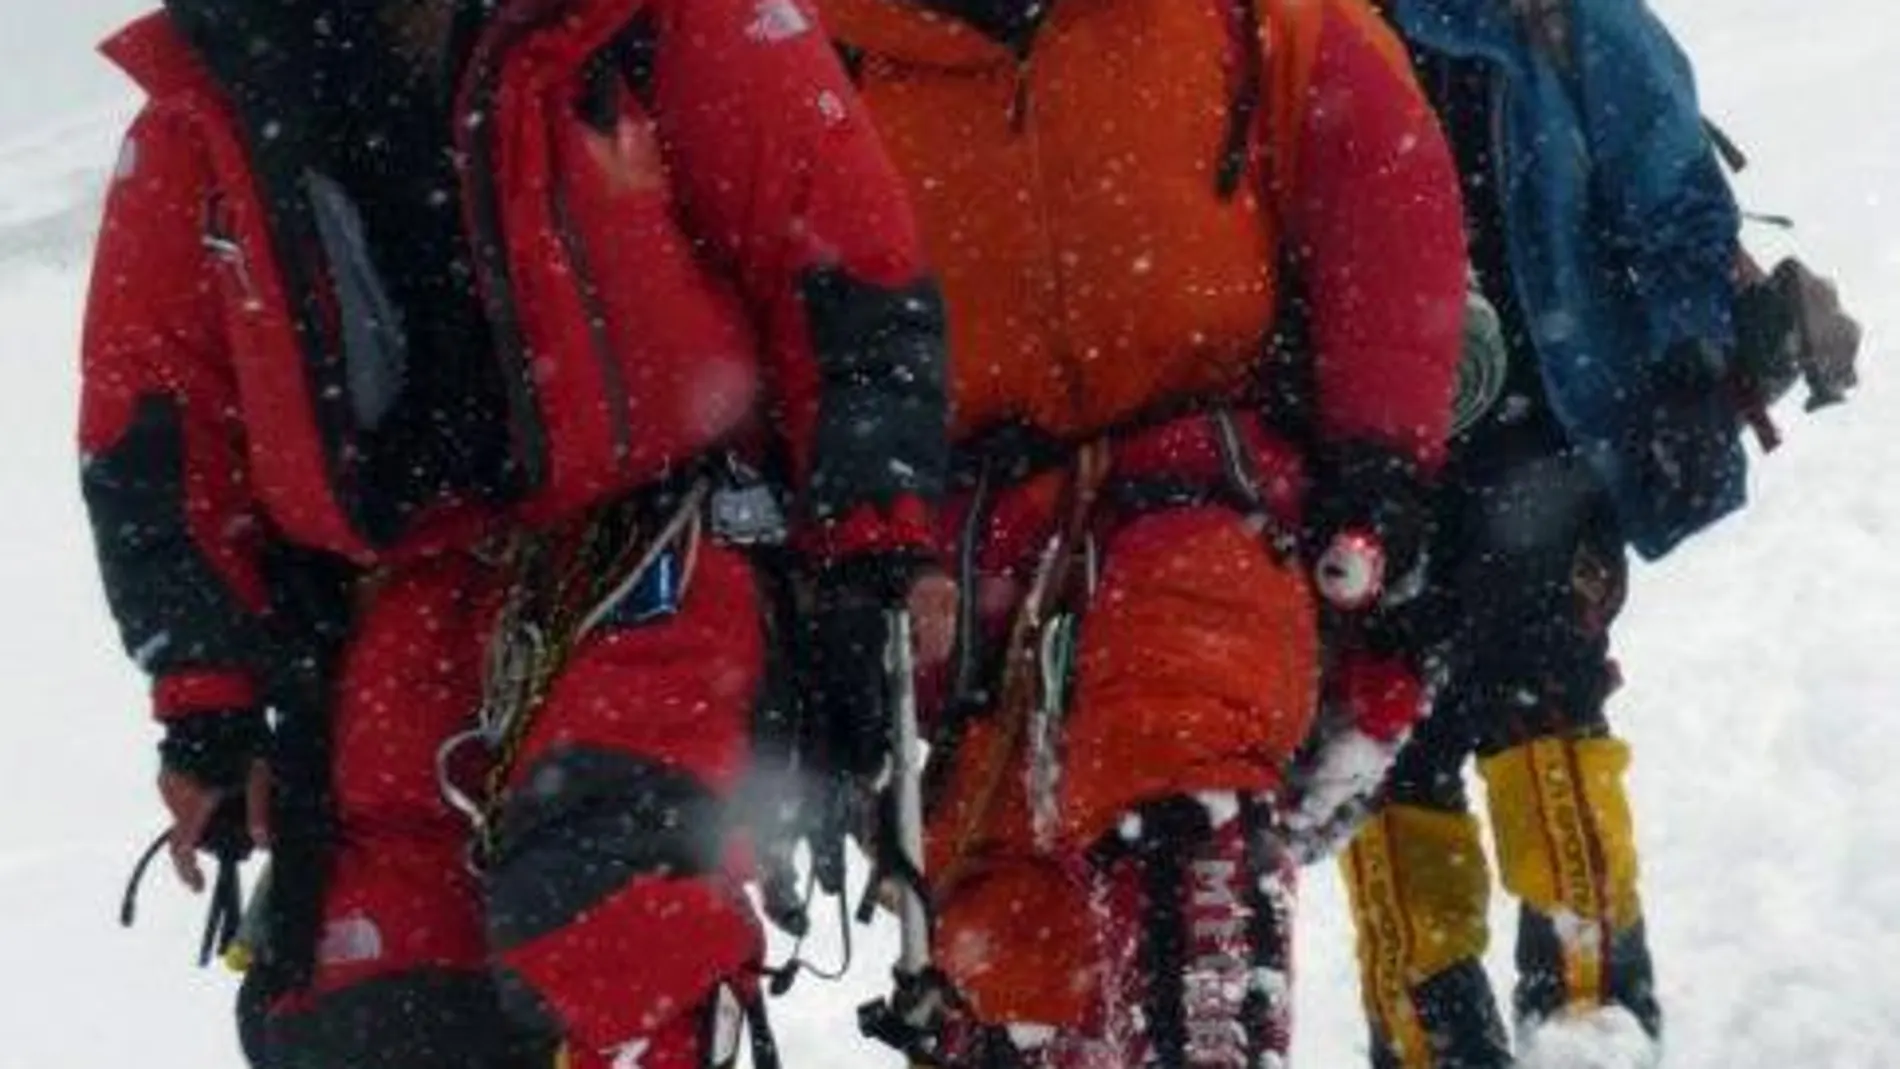 El alpinista Alfredo García durante su descenso del Gasherbrum I, de donde fue rescatado y a cuya expedición pertenecían tres alpinistas más que fallecieron tras hacer cumbre.